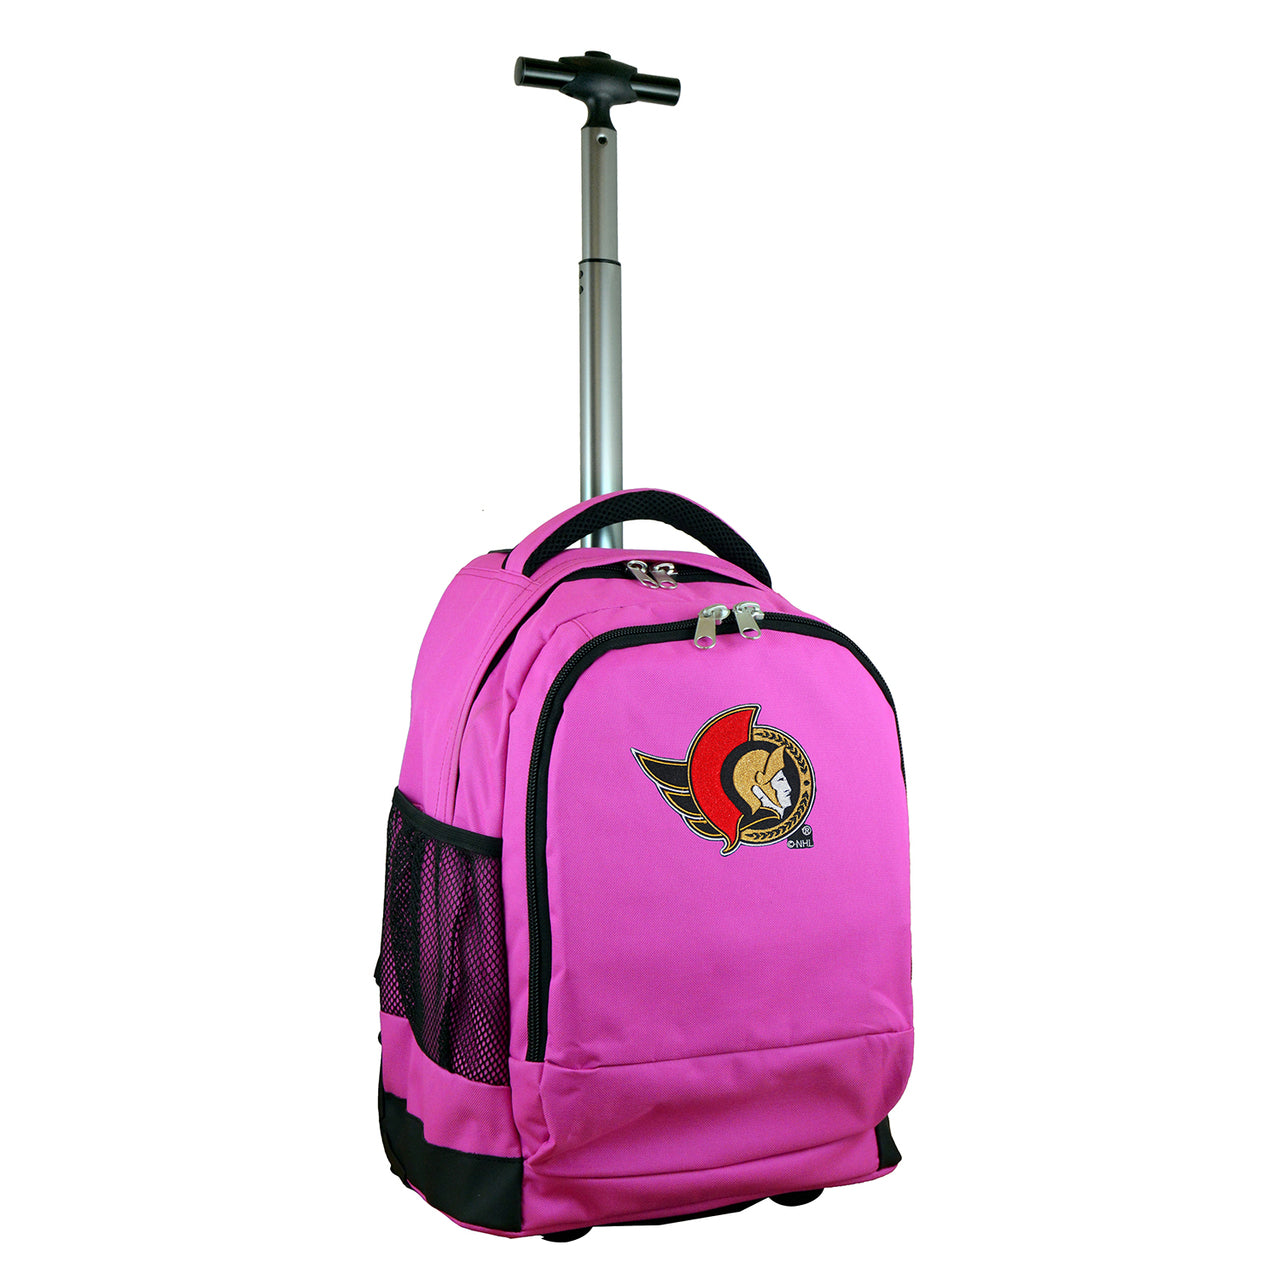 Ottawa Senators Premium Wheeled Backpack in Pink